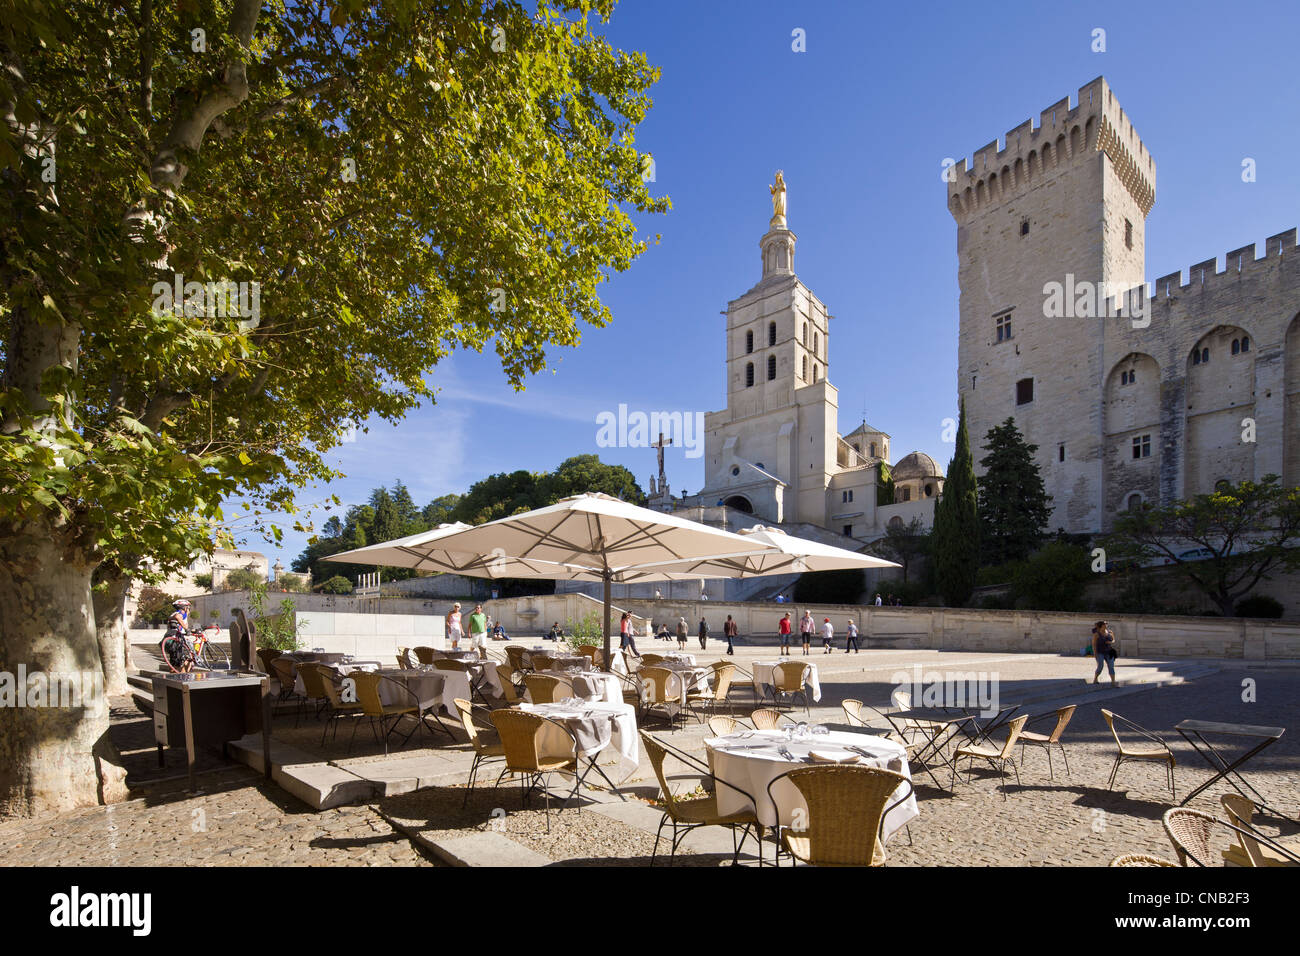 Palais des Papes, Avignon, Vaucluse, Frankreich als Weltkulturerbe der UNESCO gelistet Stockfoto